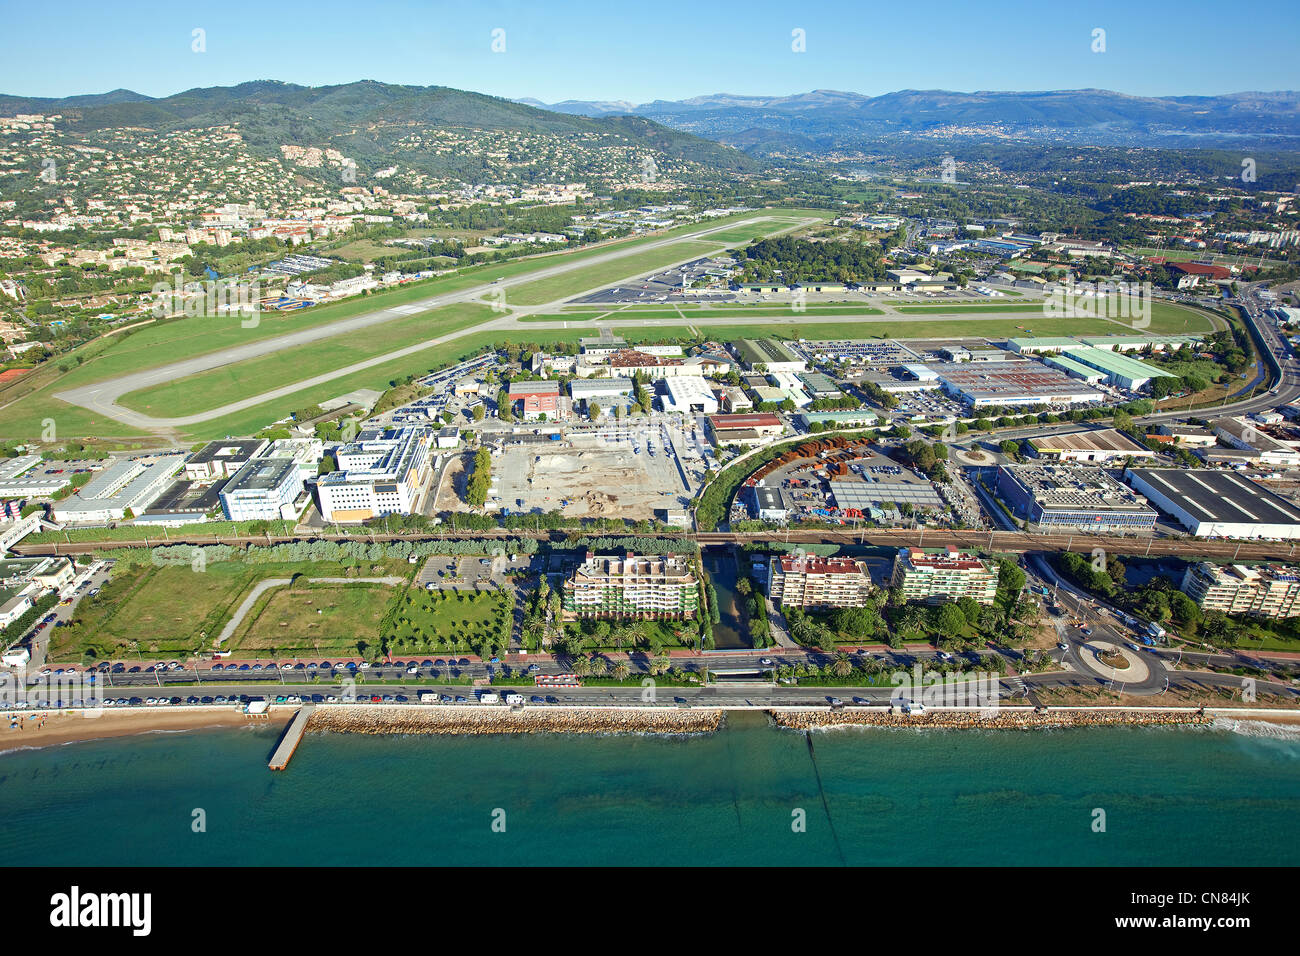 France, Alpes Maritimes, Mandelieu la Napoule, boulevard du Midi avec des plages, dans l'arrière-plan l'aéroport de Cannes Mandelieu Banque D'Images